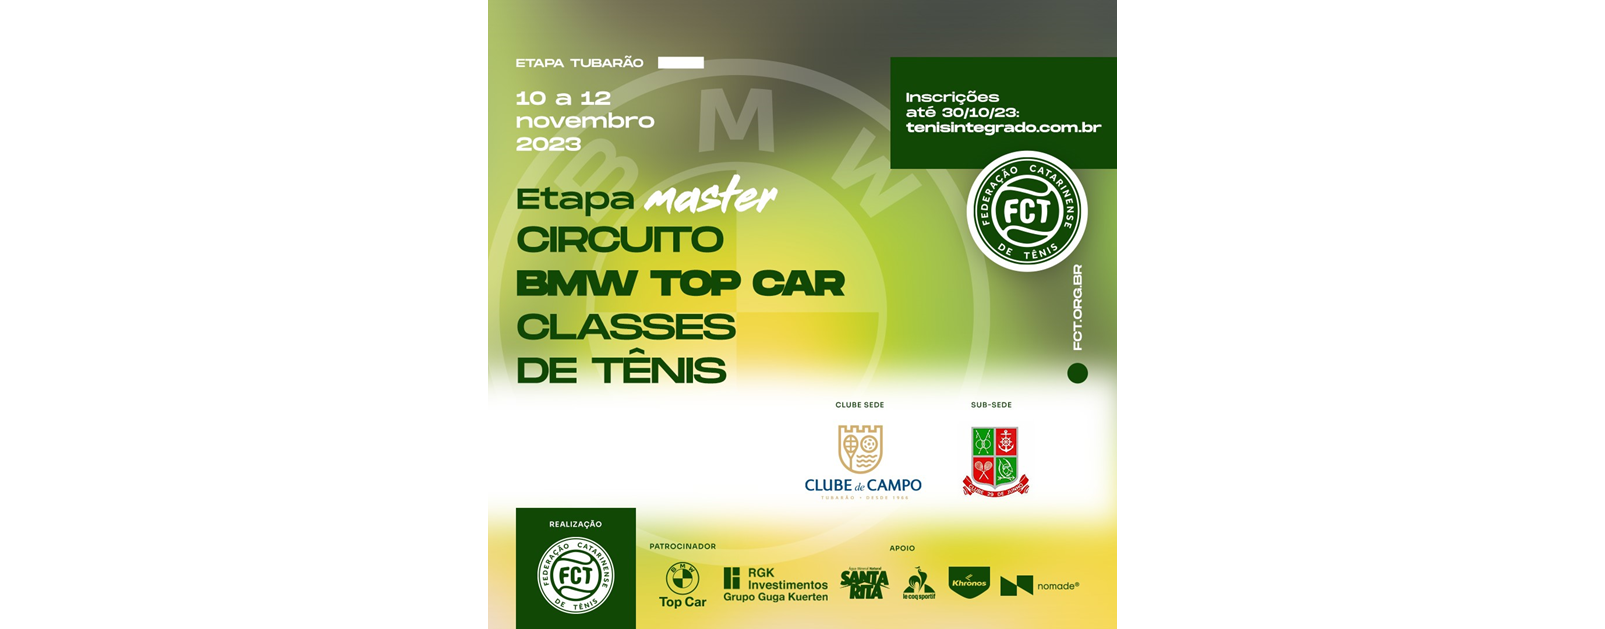 INSCRIÇÕES ABERTAS – CIRCUITO BMW TOP CAR DE TÊNIS (ETAPA MASTER) - Tubarão-SC